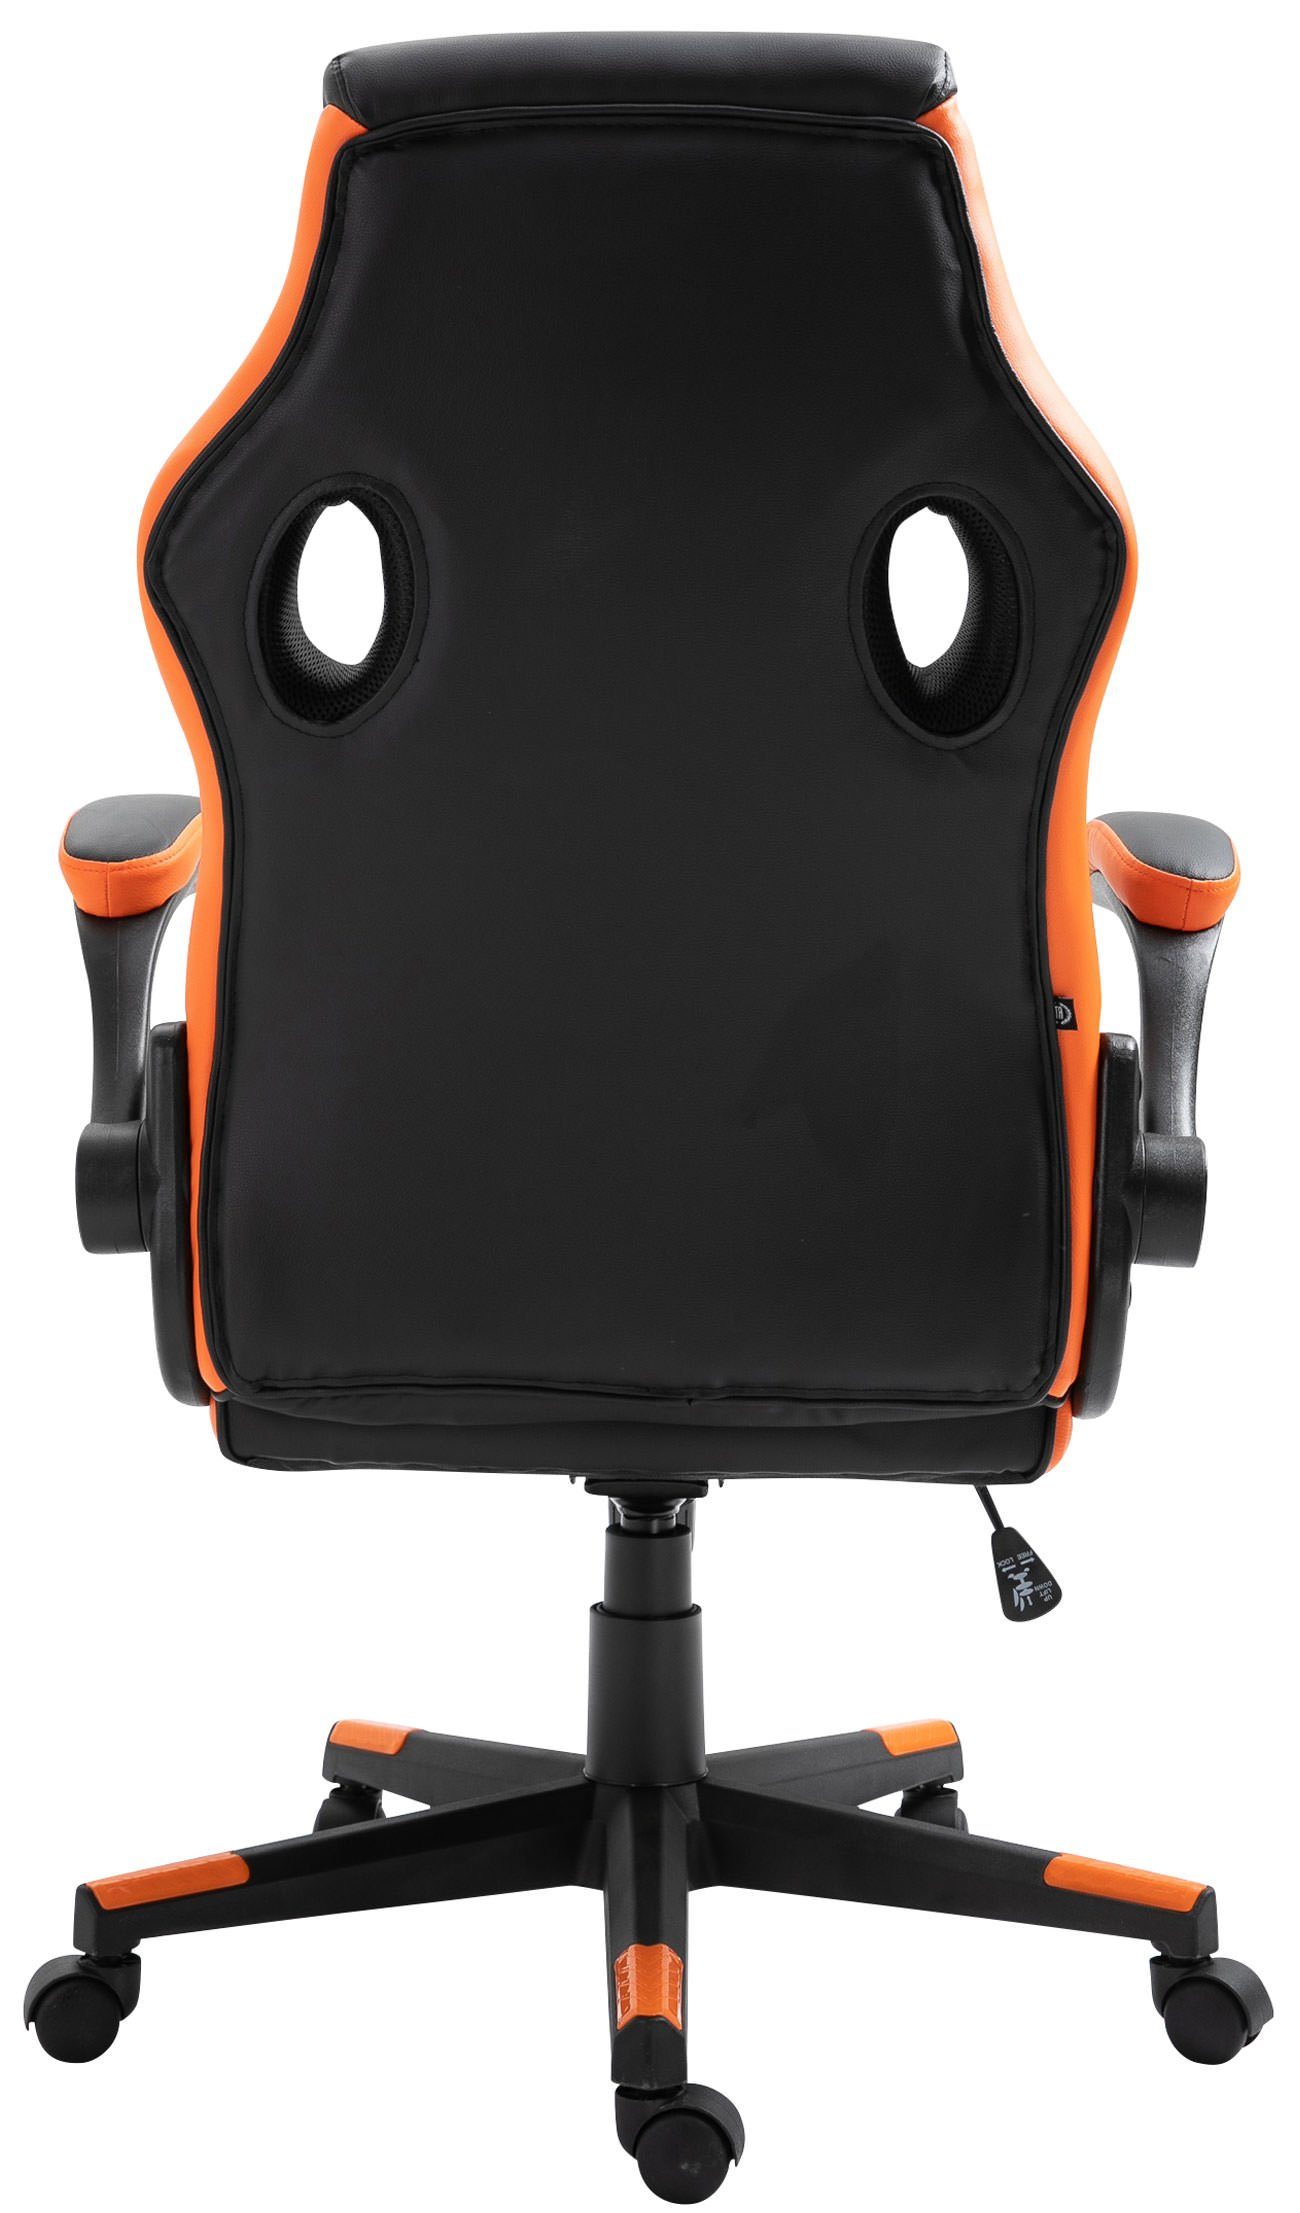 Omis höhenverstellbar Chair Gaming Kunstleder, CLP drehbar und schwarz/orange